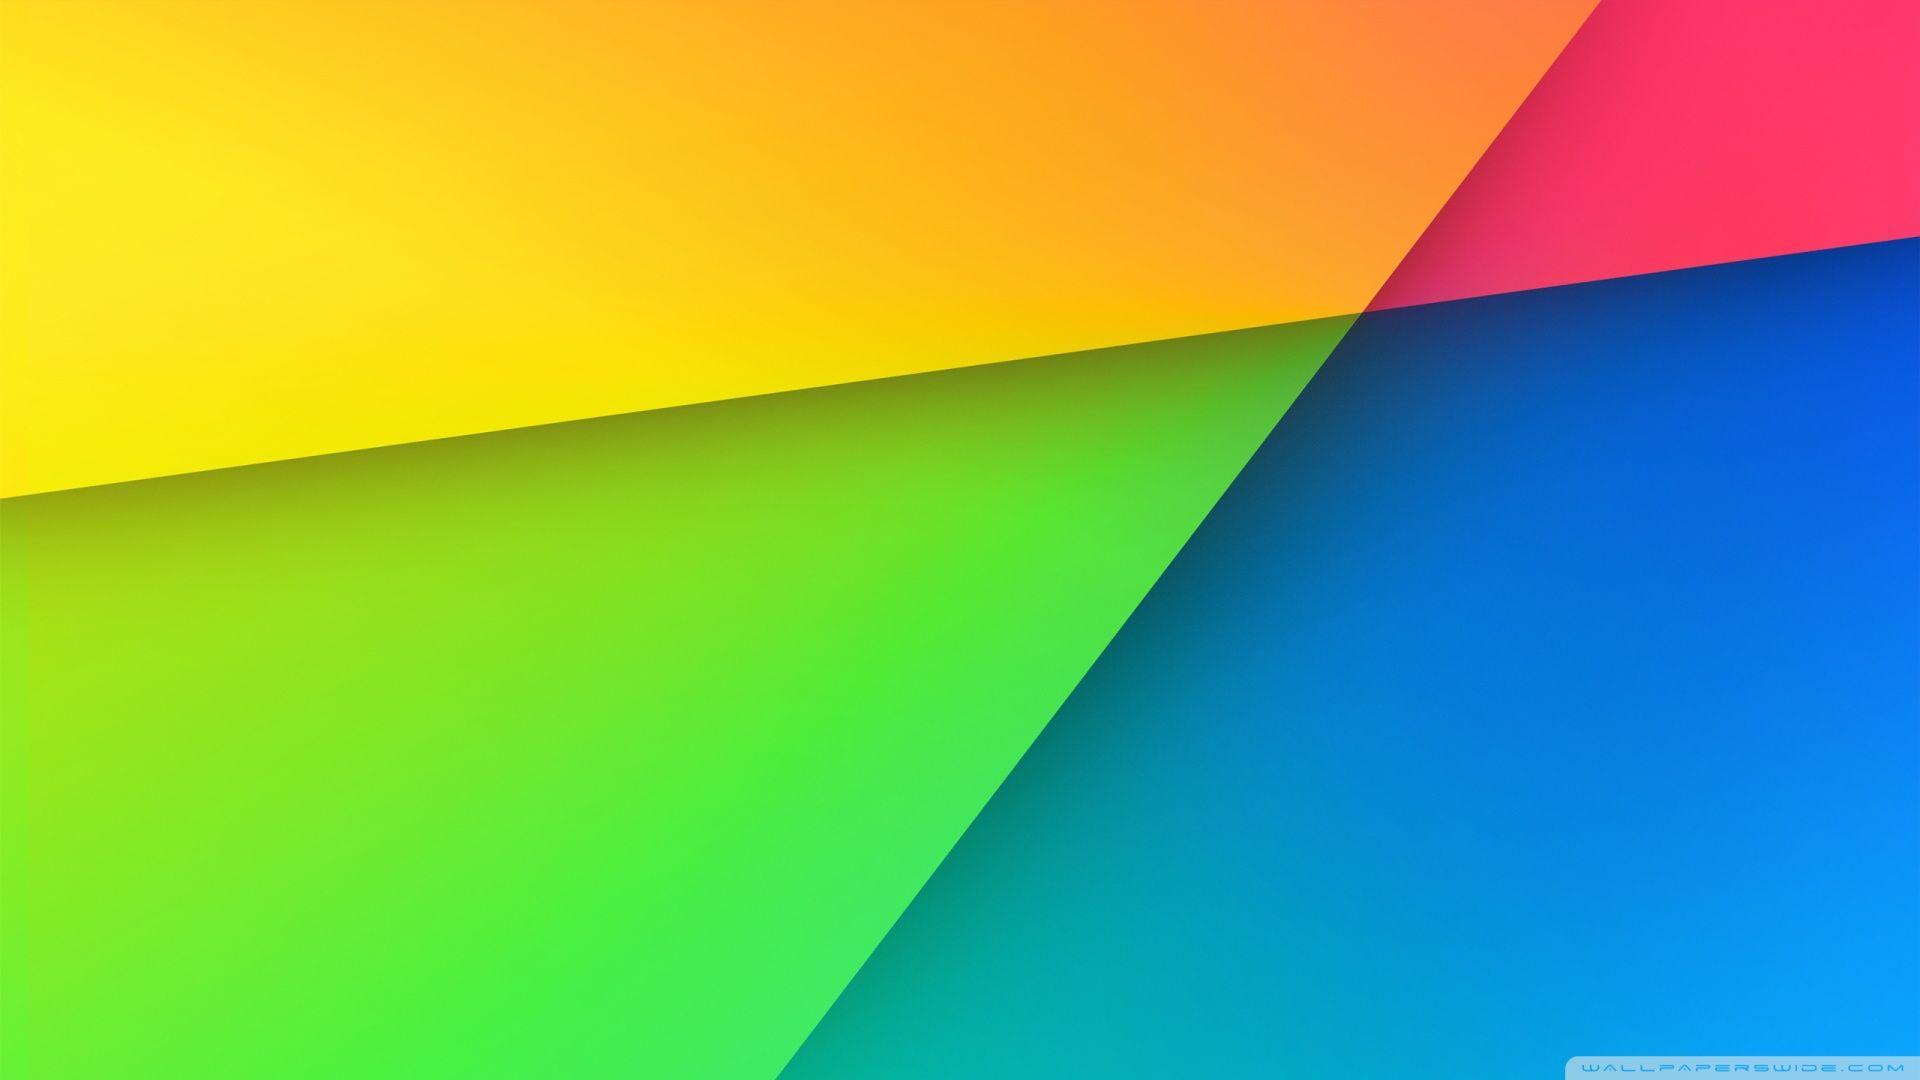 47+] Nexus 5 Wallpaper - WallpaperSafari